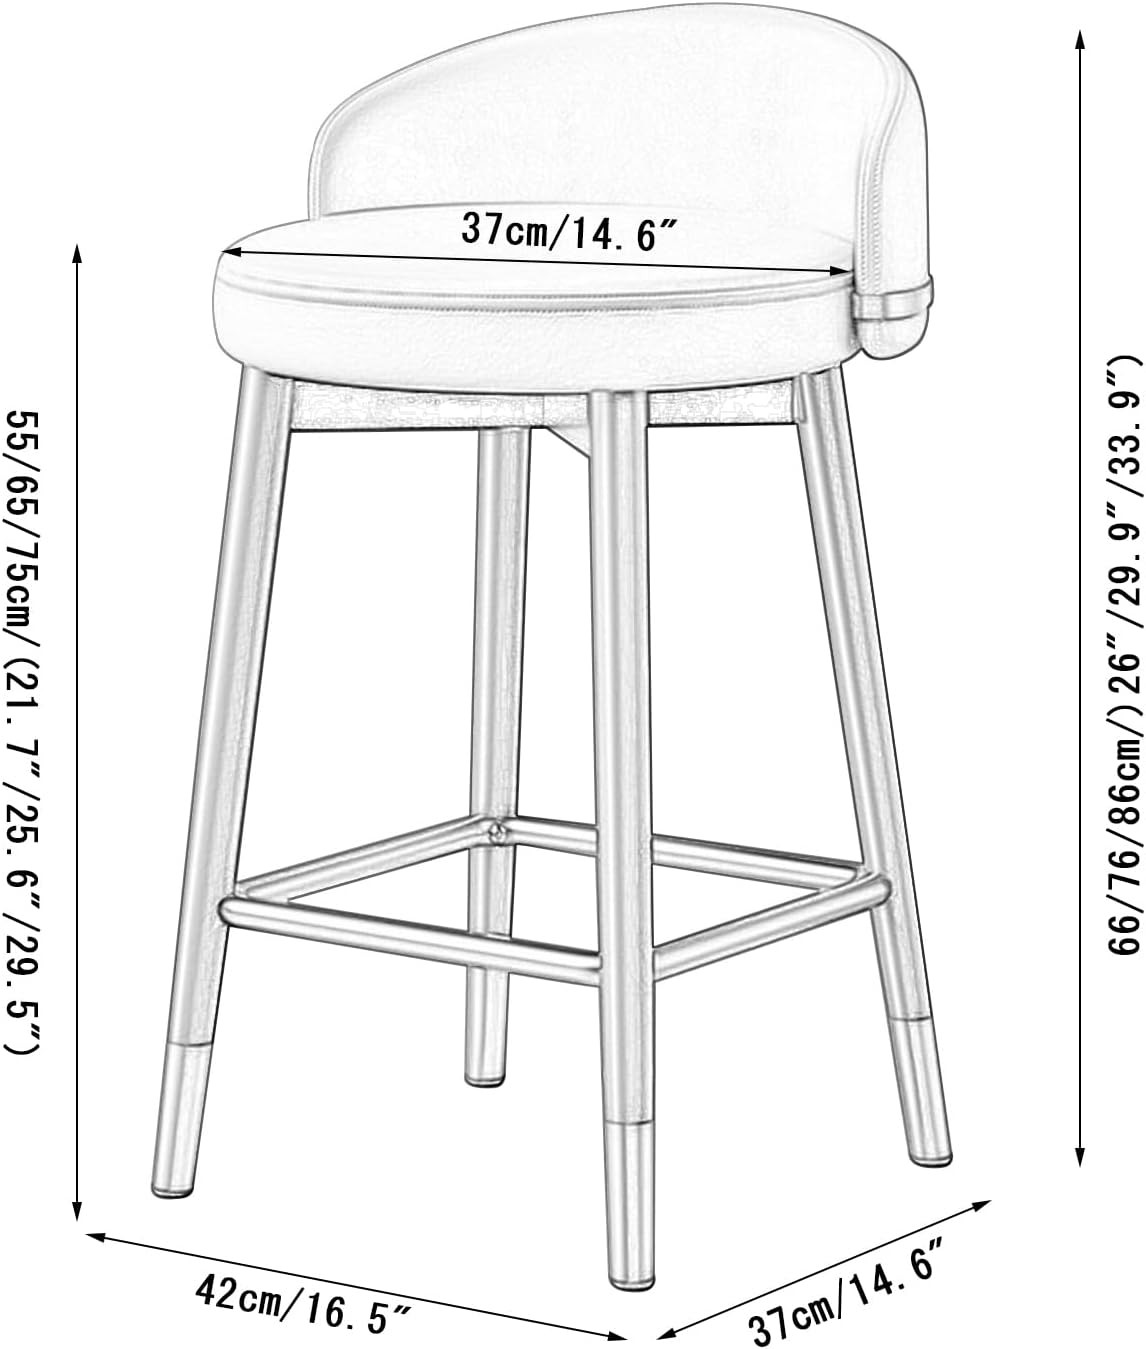 Kích thước tiêu chuẩn của ghế quầy bar chân sắt nệm da 